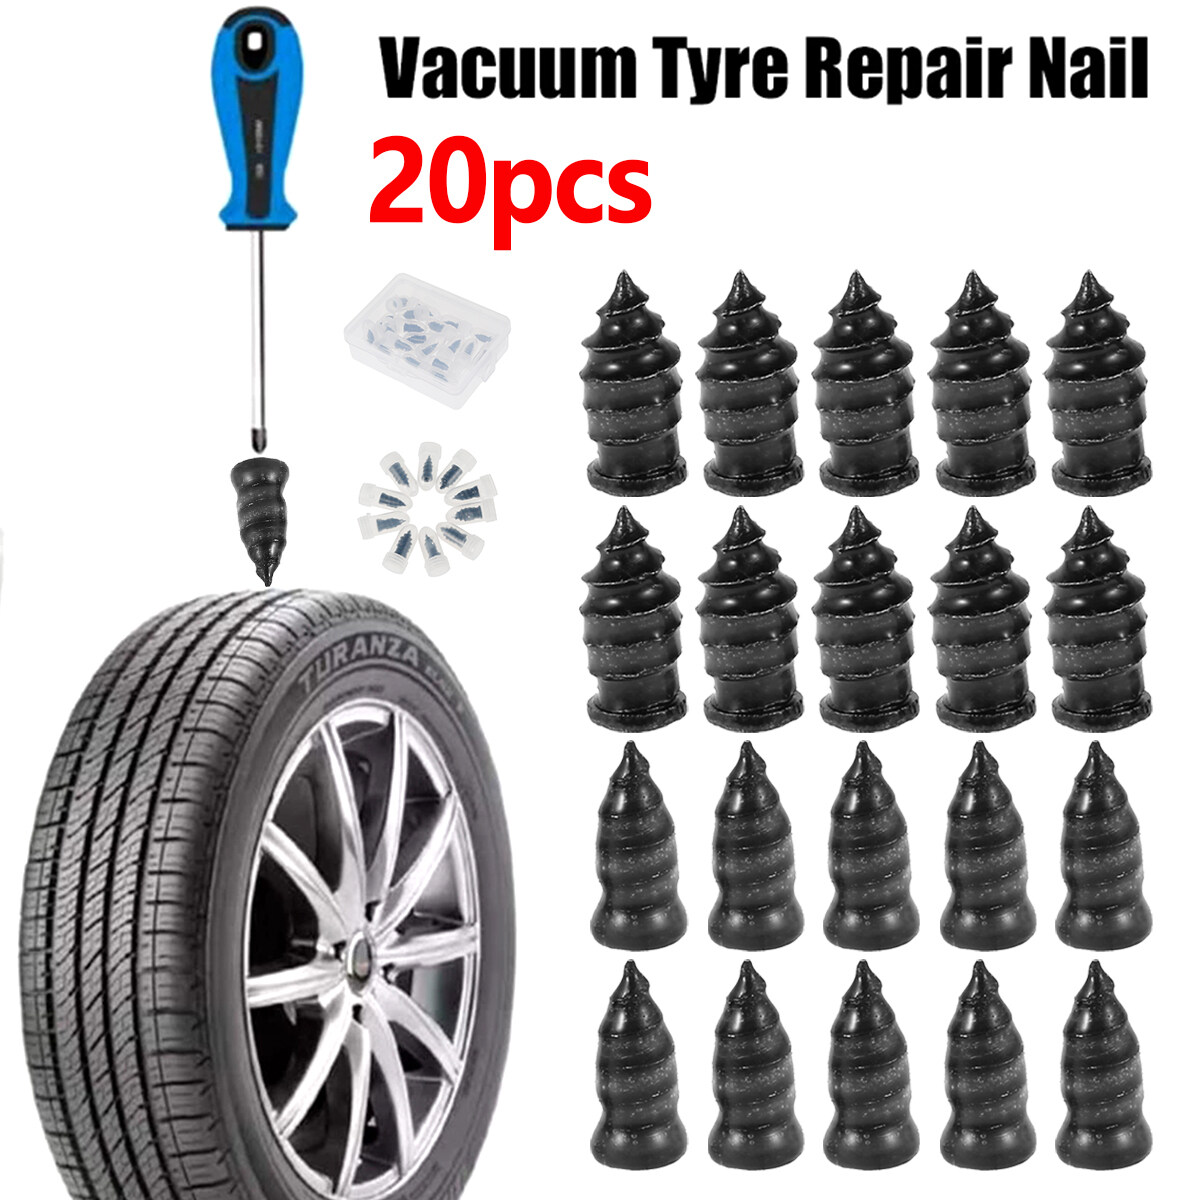 Tire Repair Rubber Nail Vacuum Tyre Repair Nail Quick Fix Tubeless Tyre Repair Kit for Bike Motorcycle Truck Large, 30Pcs 